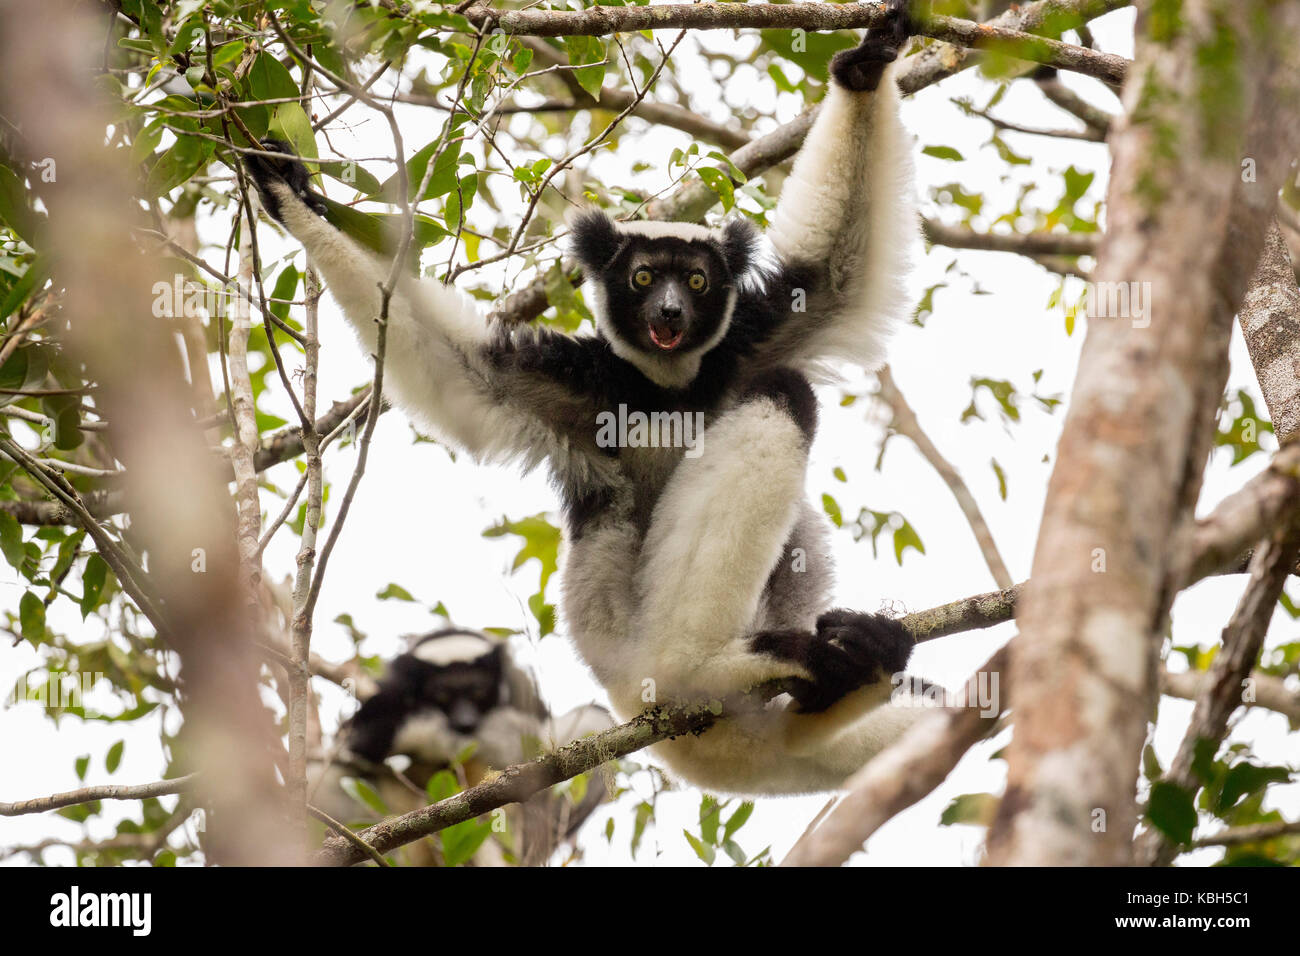 África, Madgascar, Parque Nacional de Andasibe Mantadia, wild Indri (indri Indri), el más grande del mundo lemur sentado en el árbol. Foto de stock